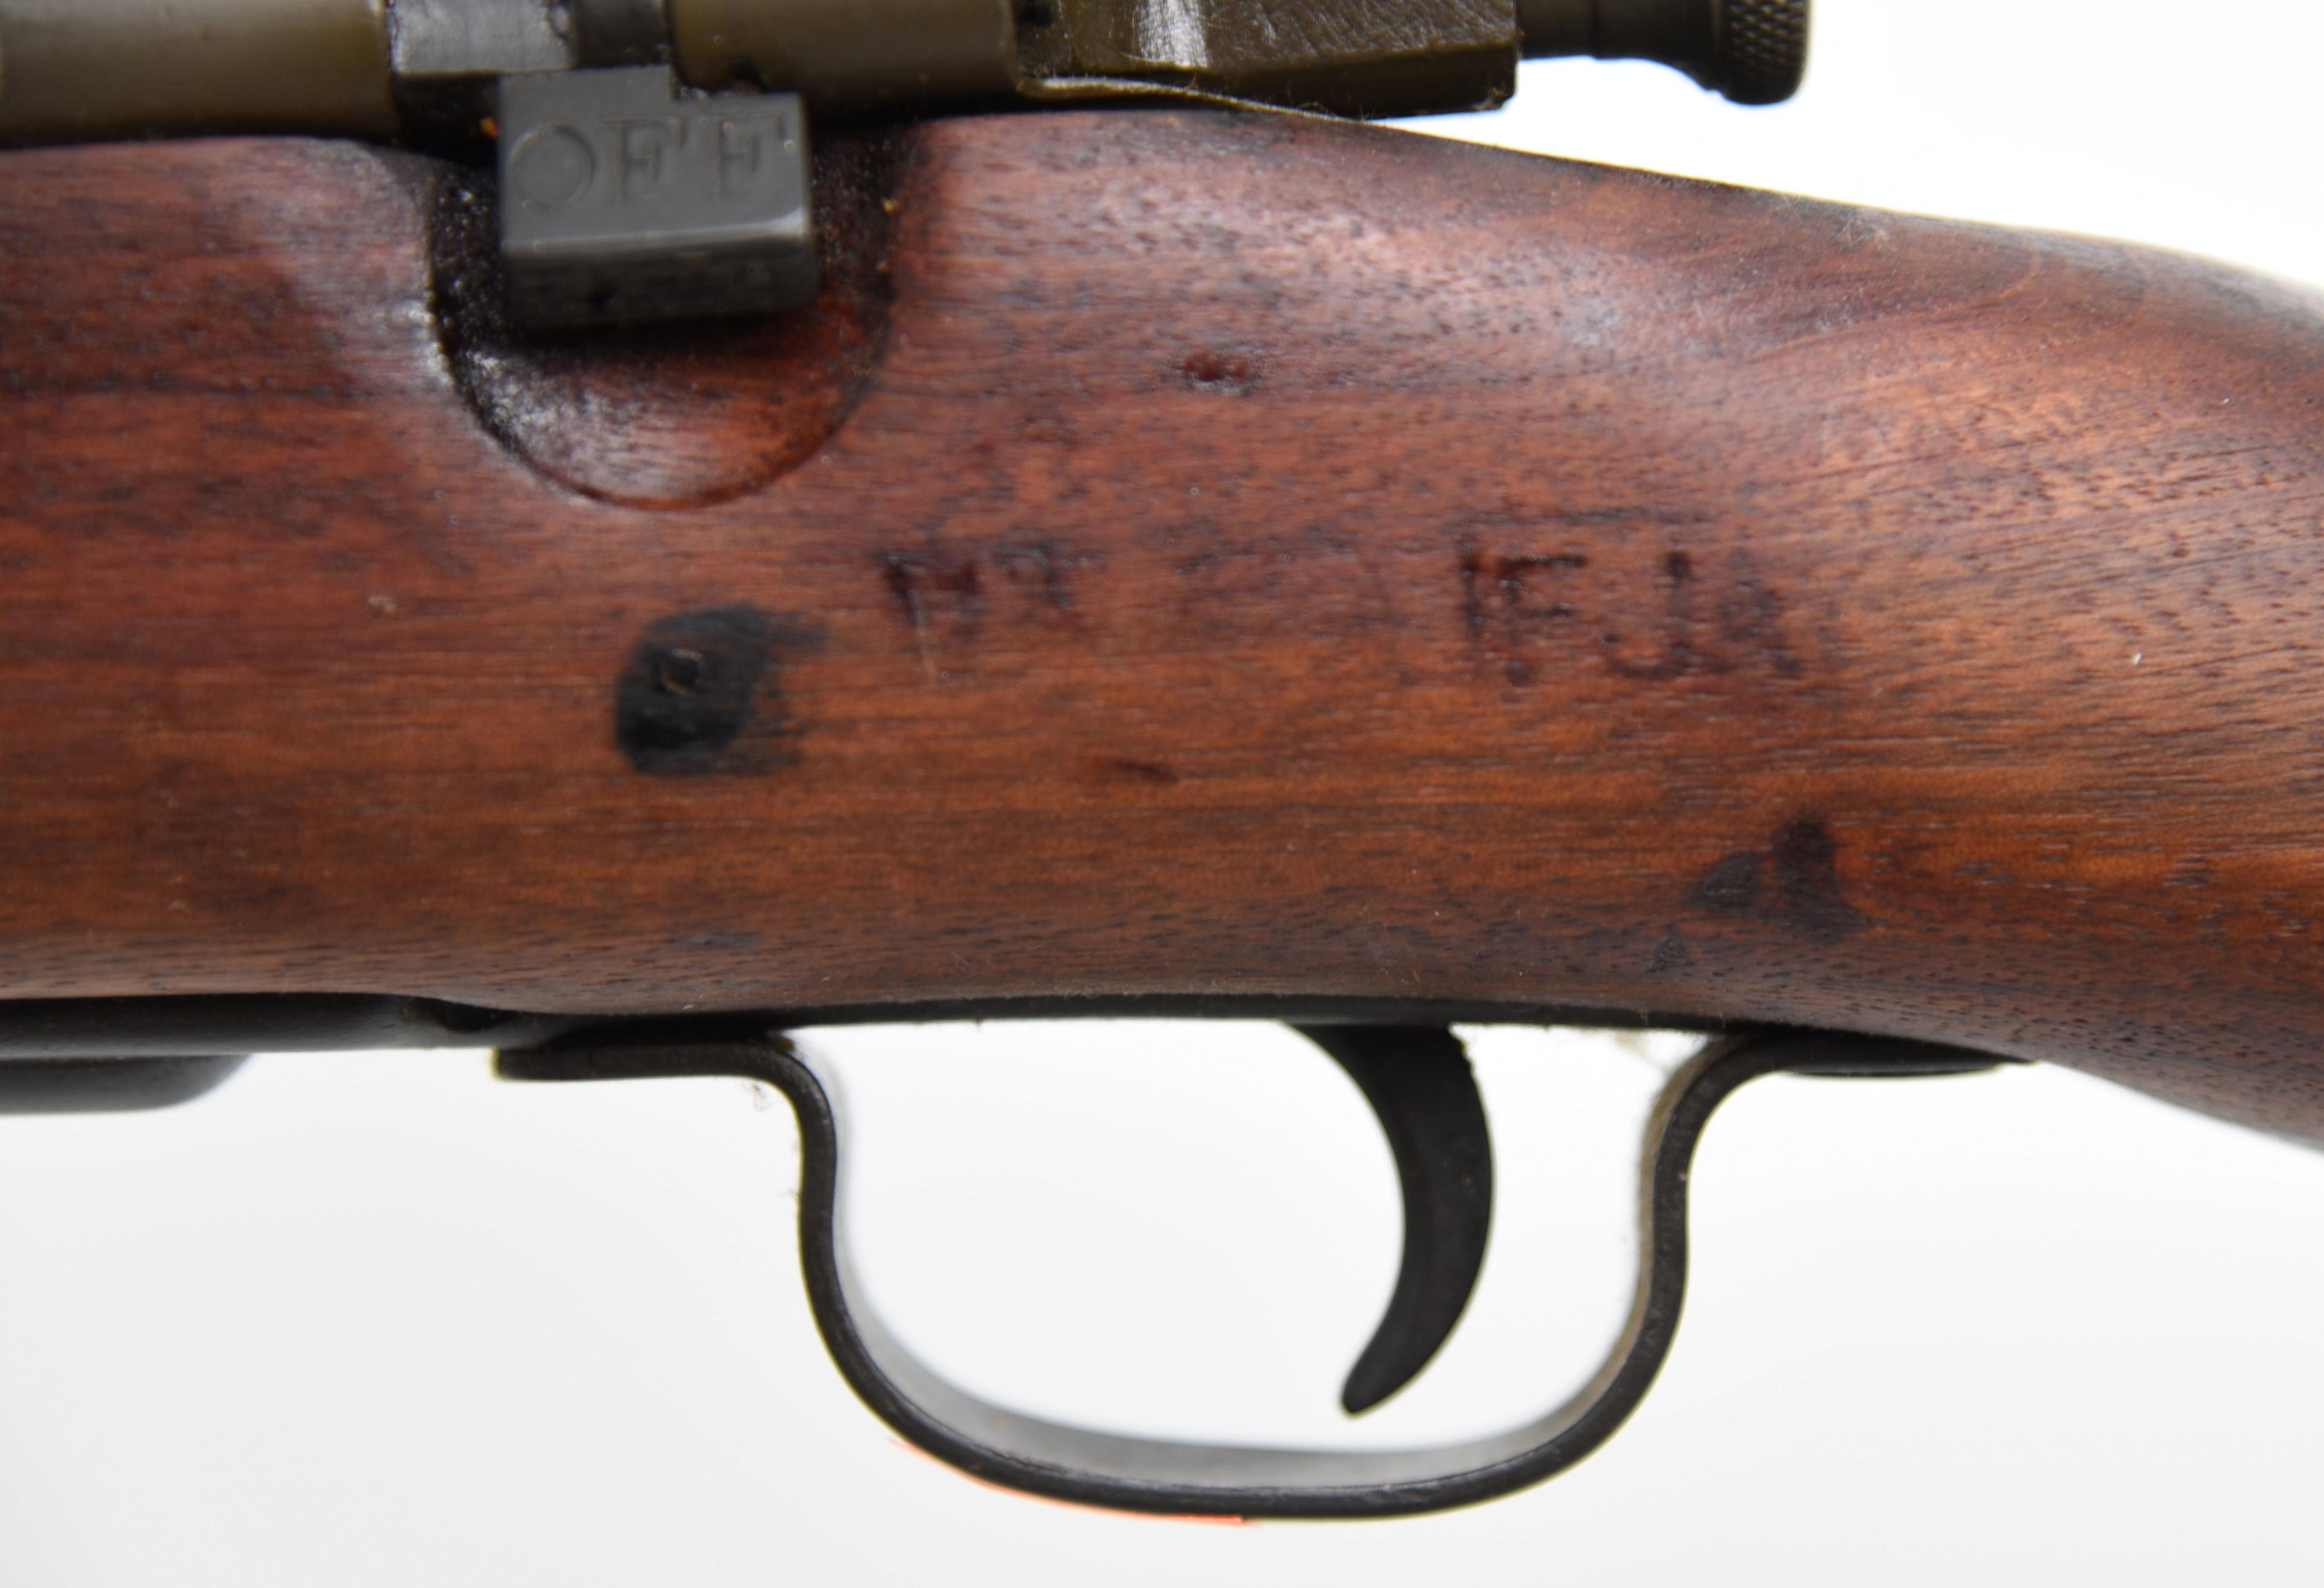 U.S. REMINGTON 1903-A3 Bolt Action Rifle